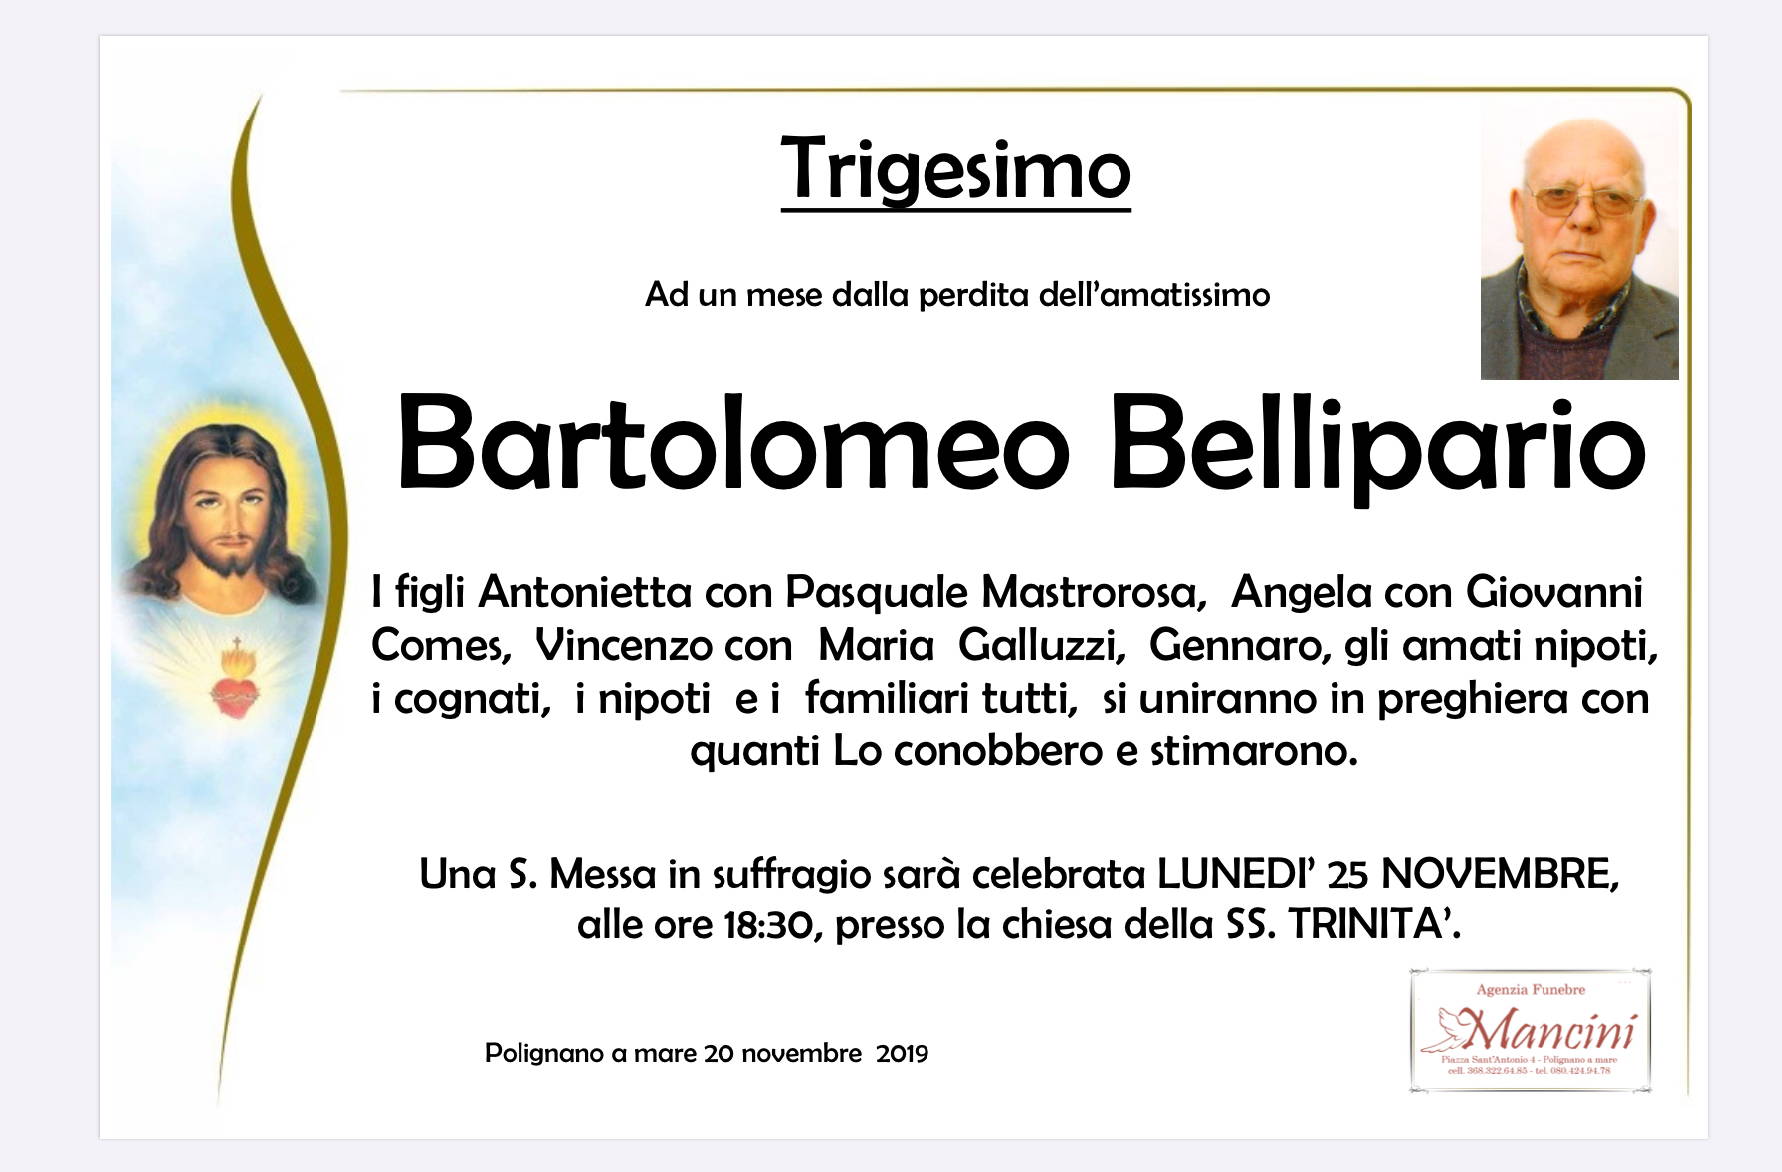 Bartolomeo Bellipario